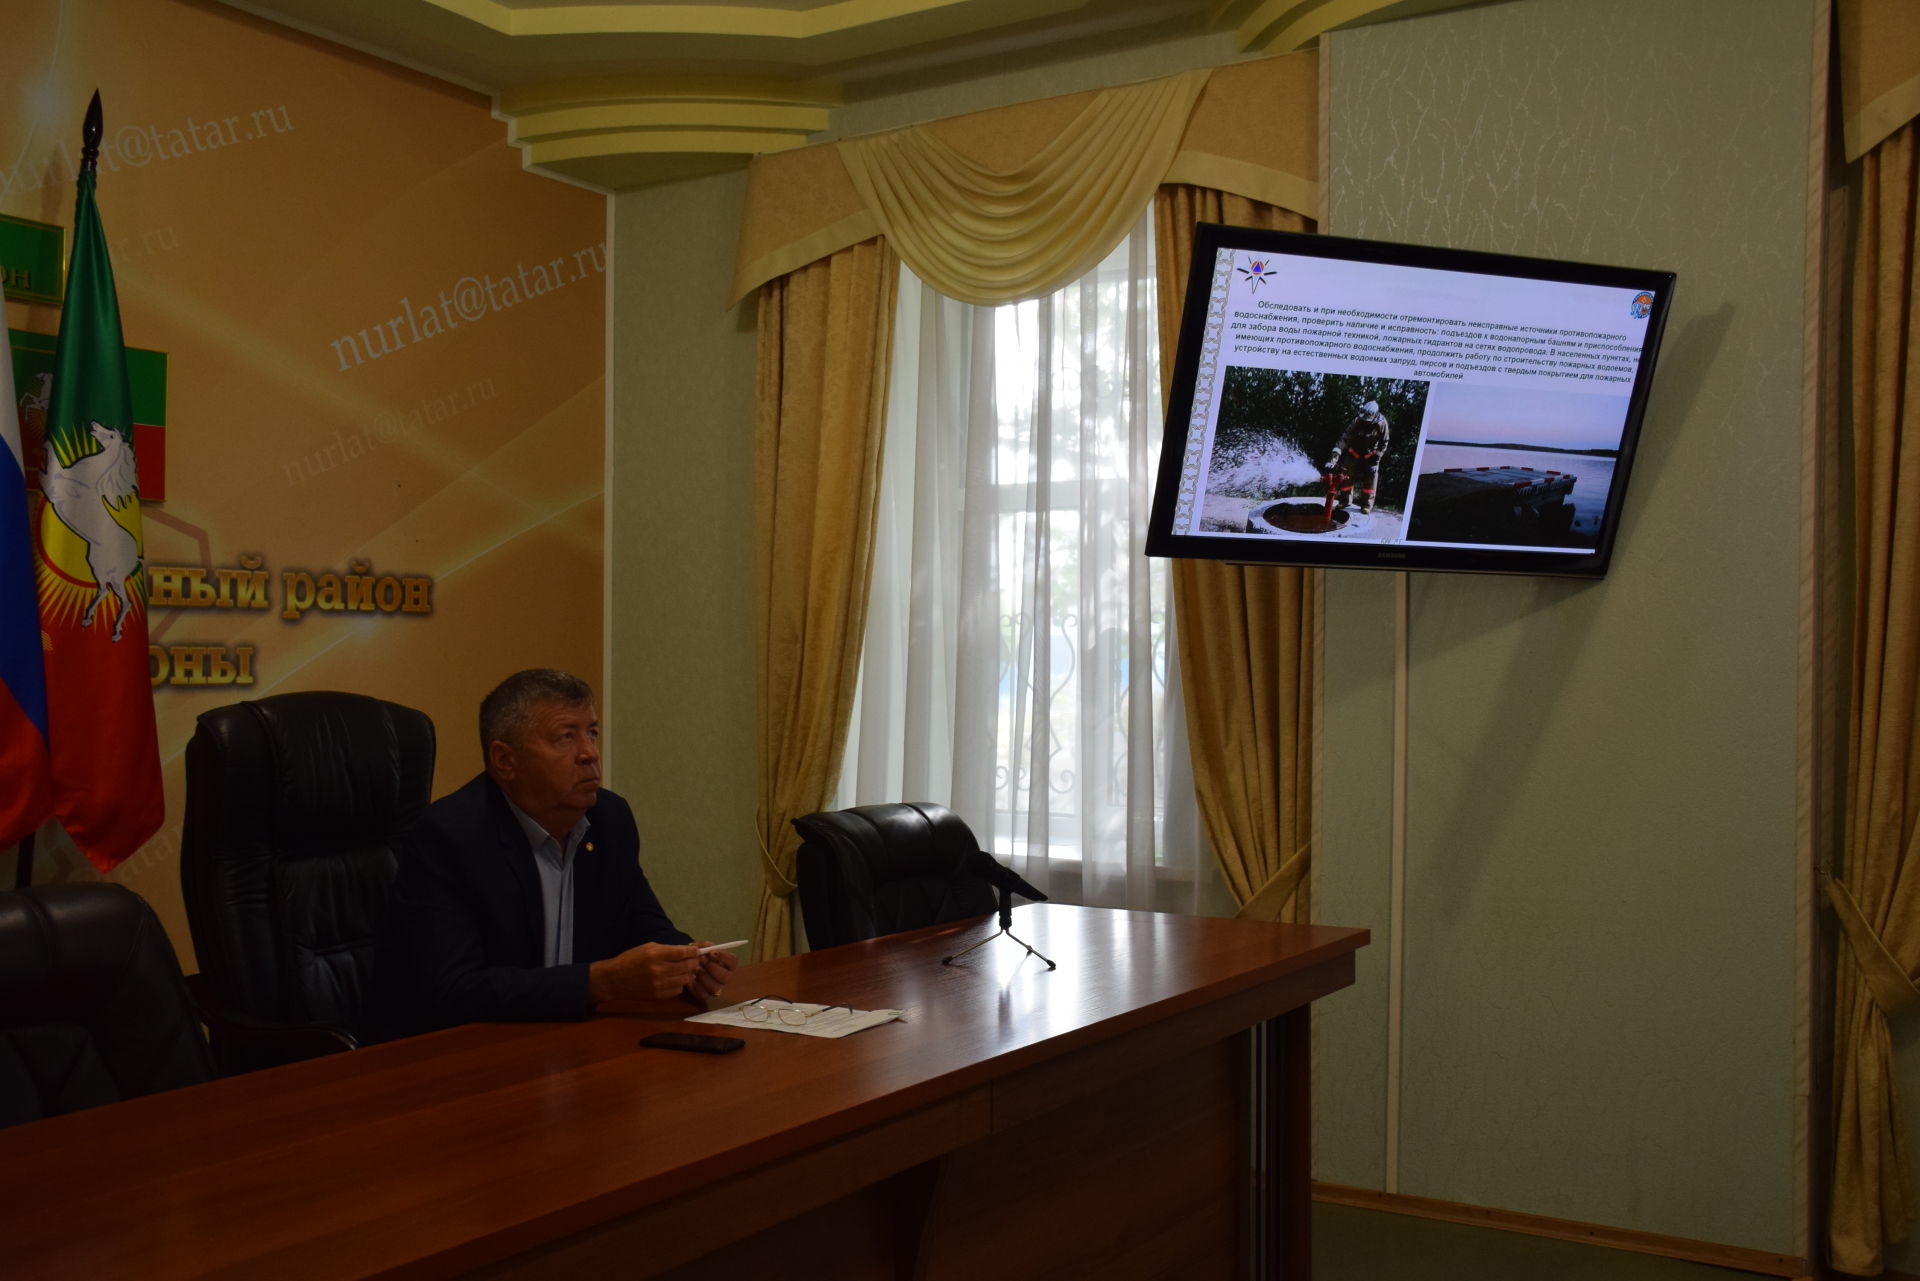 Рекомендовано обновить противопожарные минерализованные полосы в селах Нурлатского района